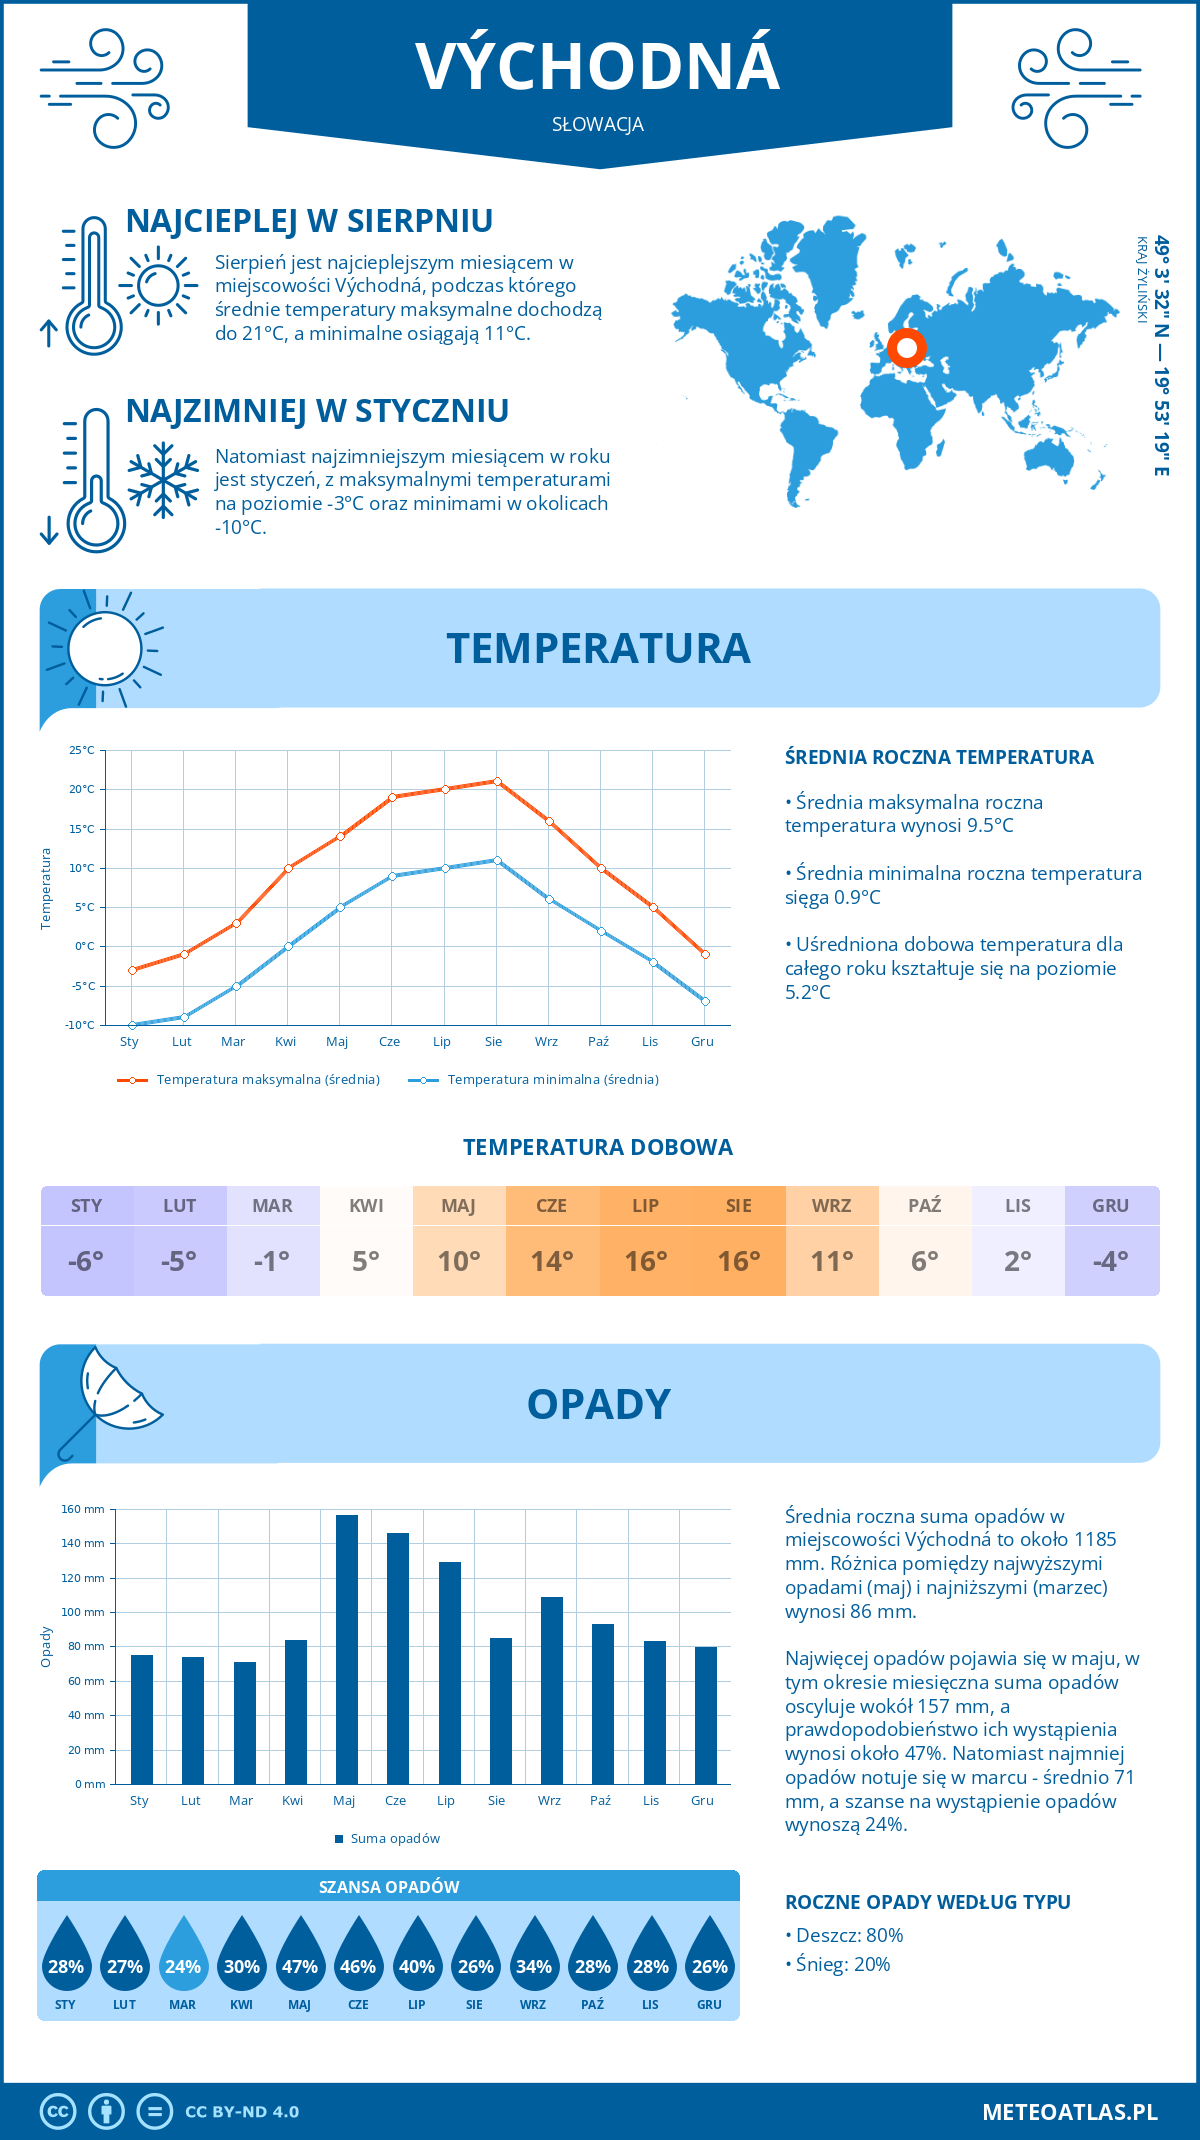 Pogoda Wychodna (Słowacja). Temperatura oraz opady.